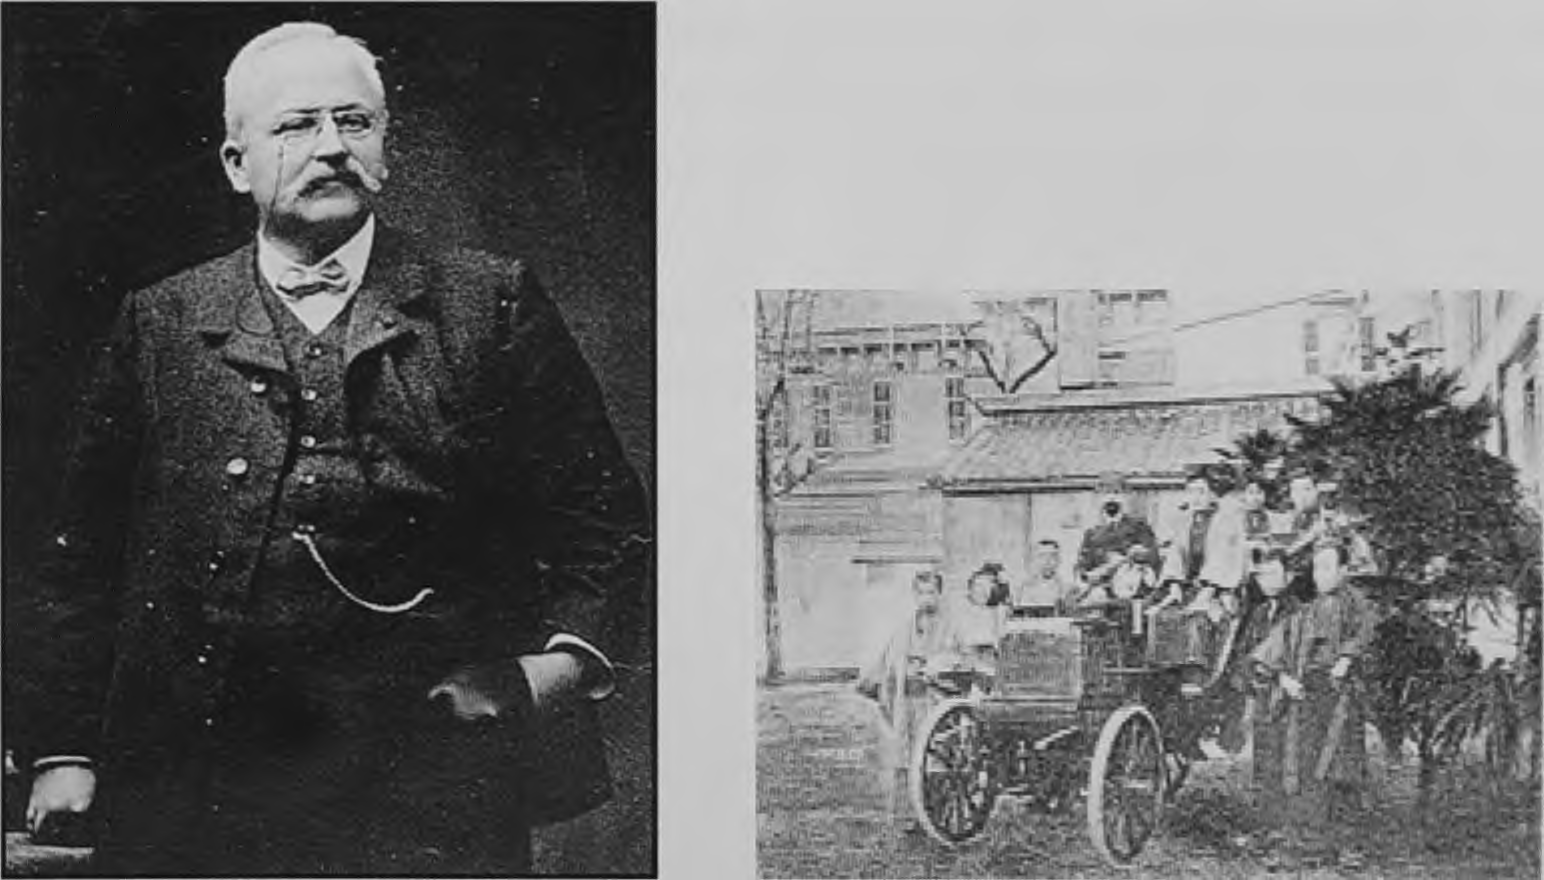 ο Πεζό, Ο Armand Peugeot Οι Panhard-Levassor σε επίδειξη στην Ιαπωνία το 1898 Οι Πανάρ και Λεβασόρ ήταν οι δημιουργοί του πρώτου συστήματος μετάδοσης όπως το γνωρίζουμε σήμερα.